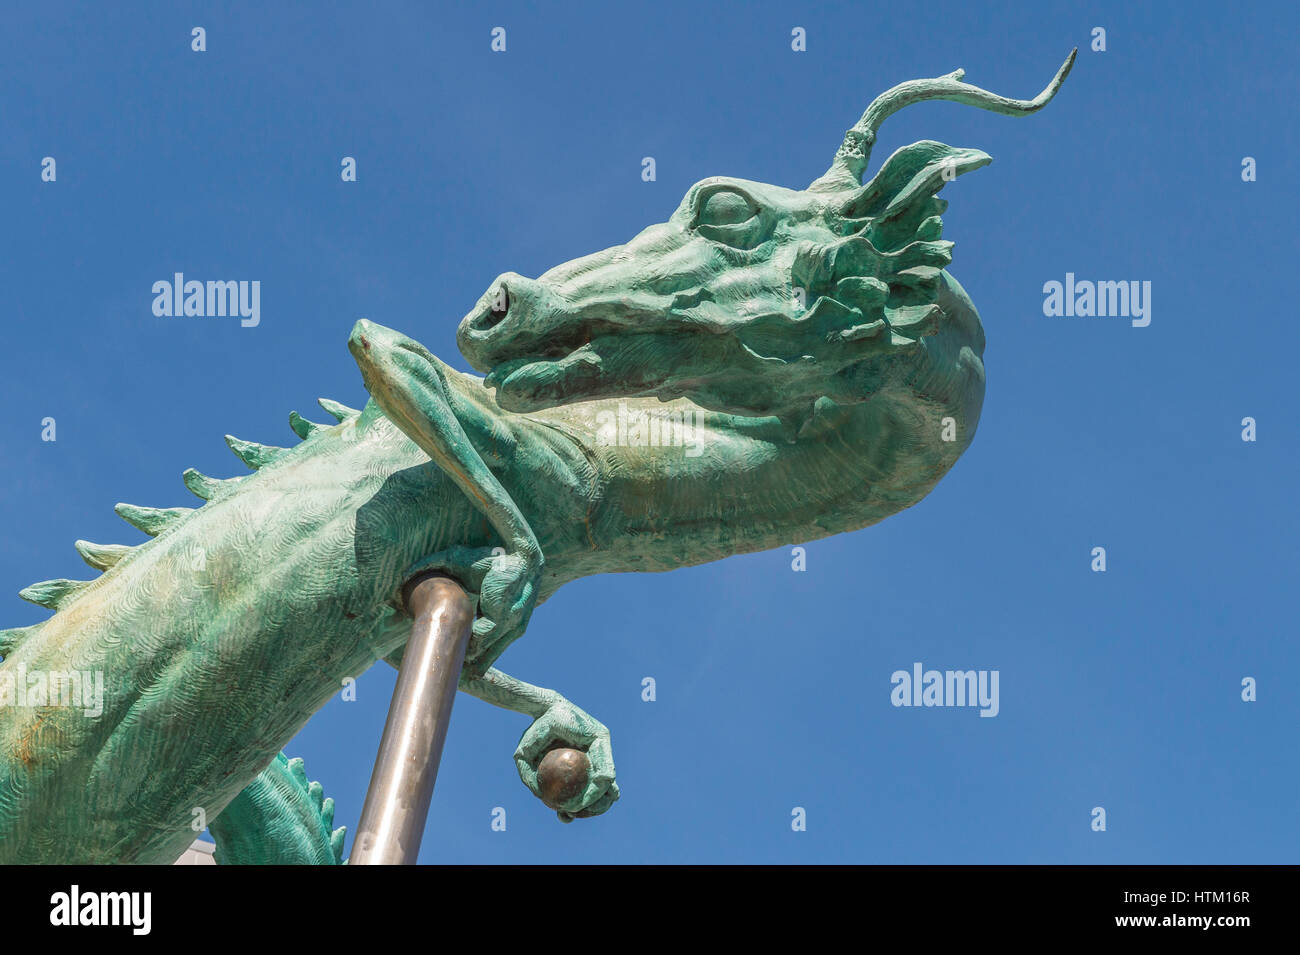 Bronze dragon, street art, sculpture, Chinatown, downtown Philadelphia, Pennsylvania, USA Stock Photo